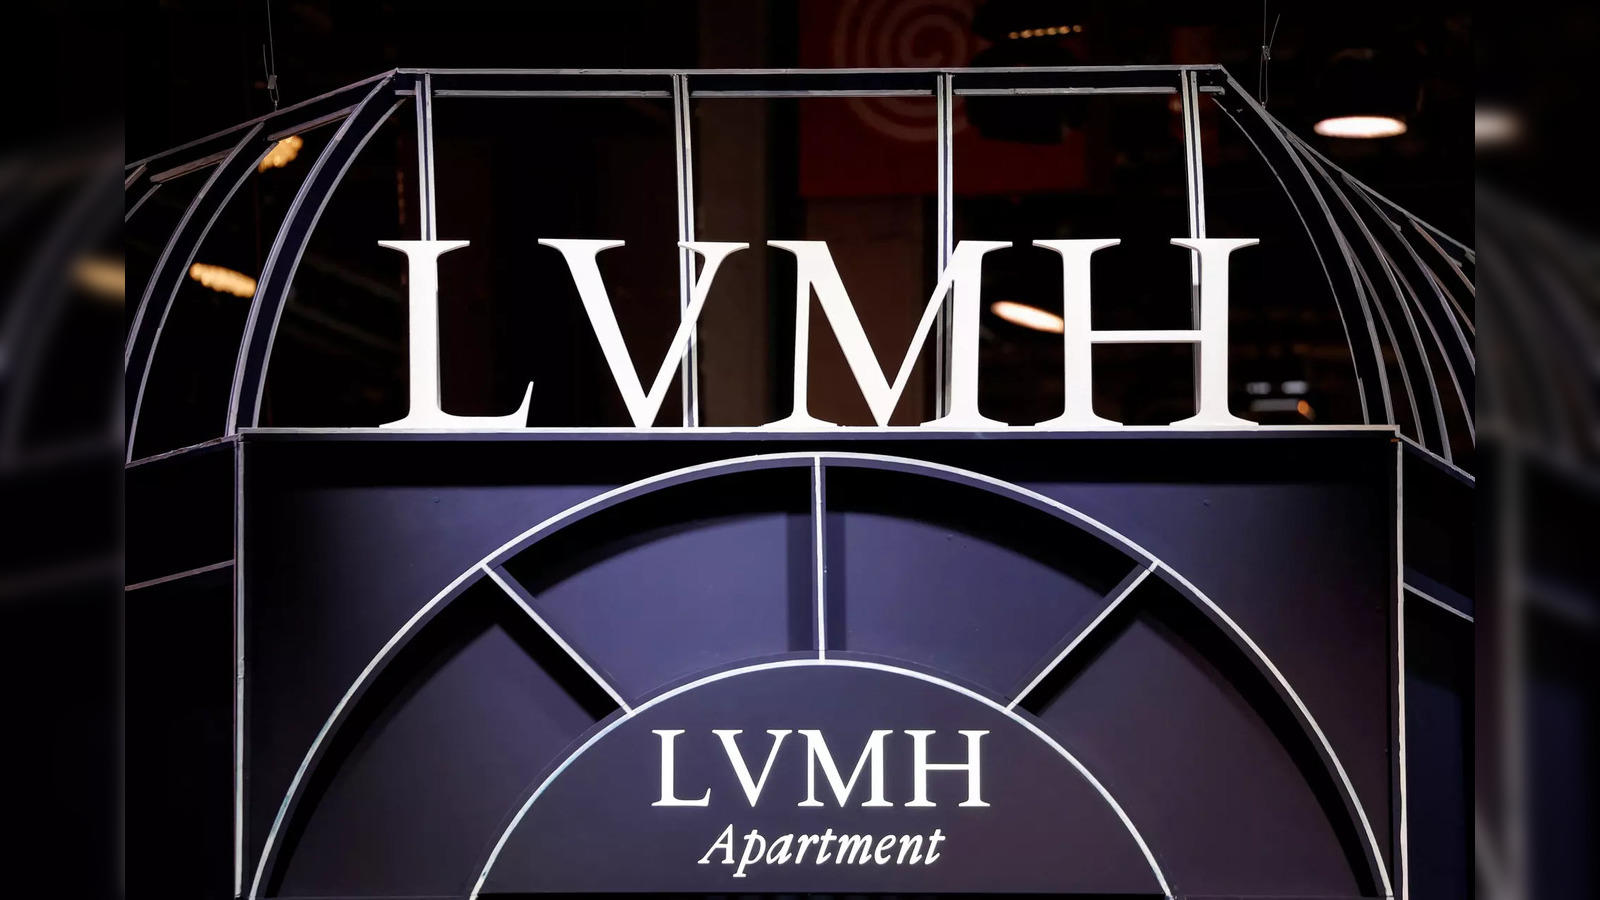 LVMH breaks into world top 10 as market cap nears $500 billion - The  Economic Times